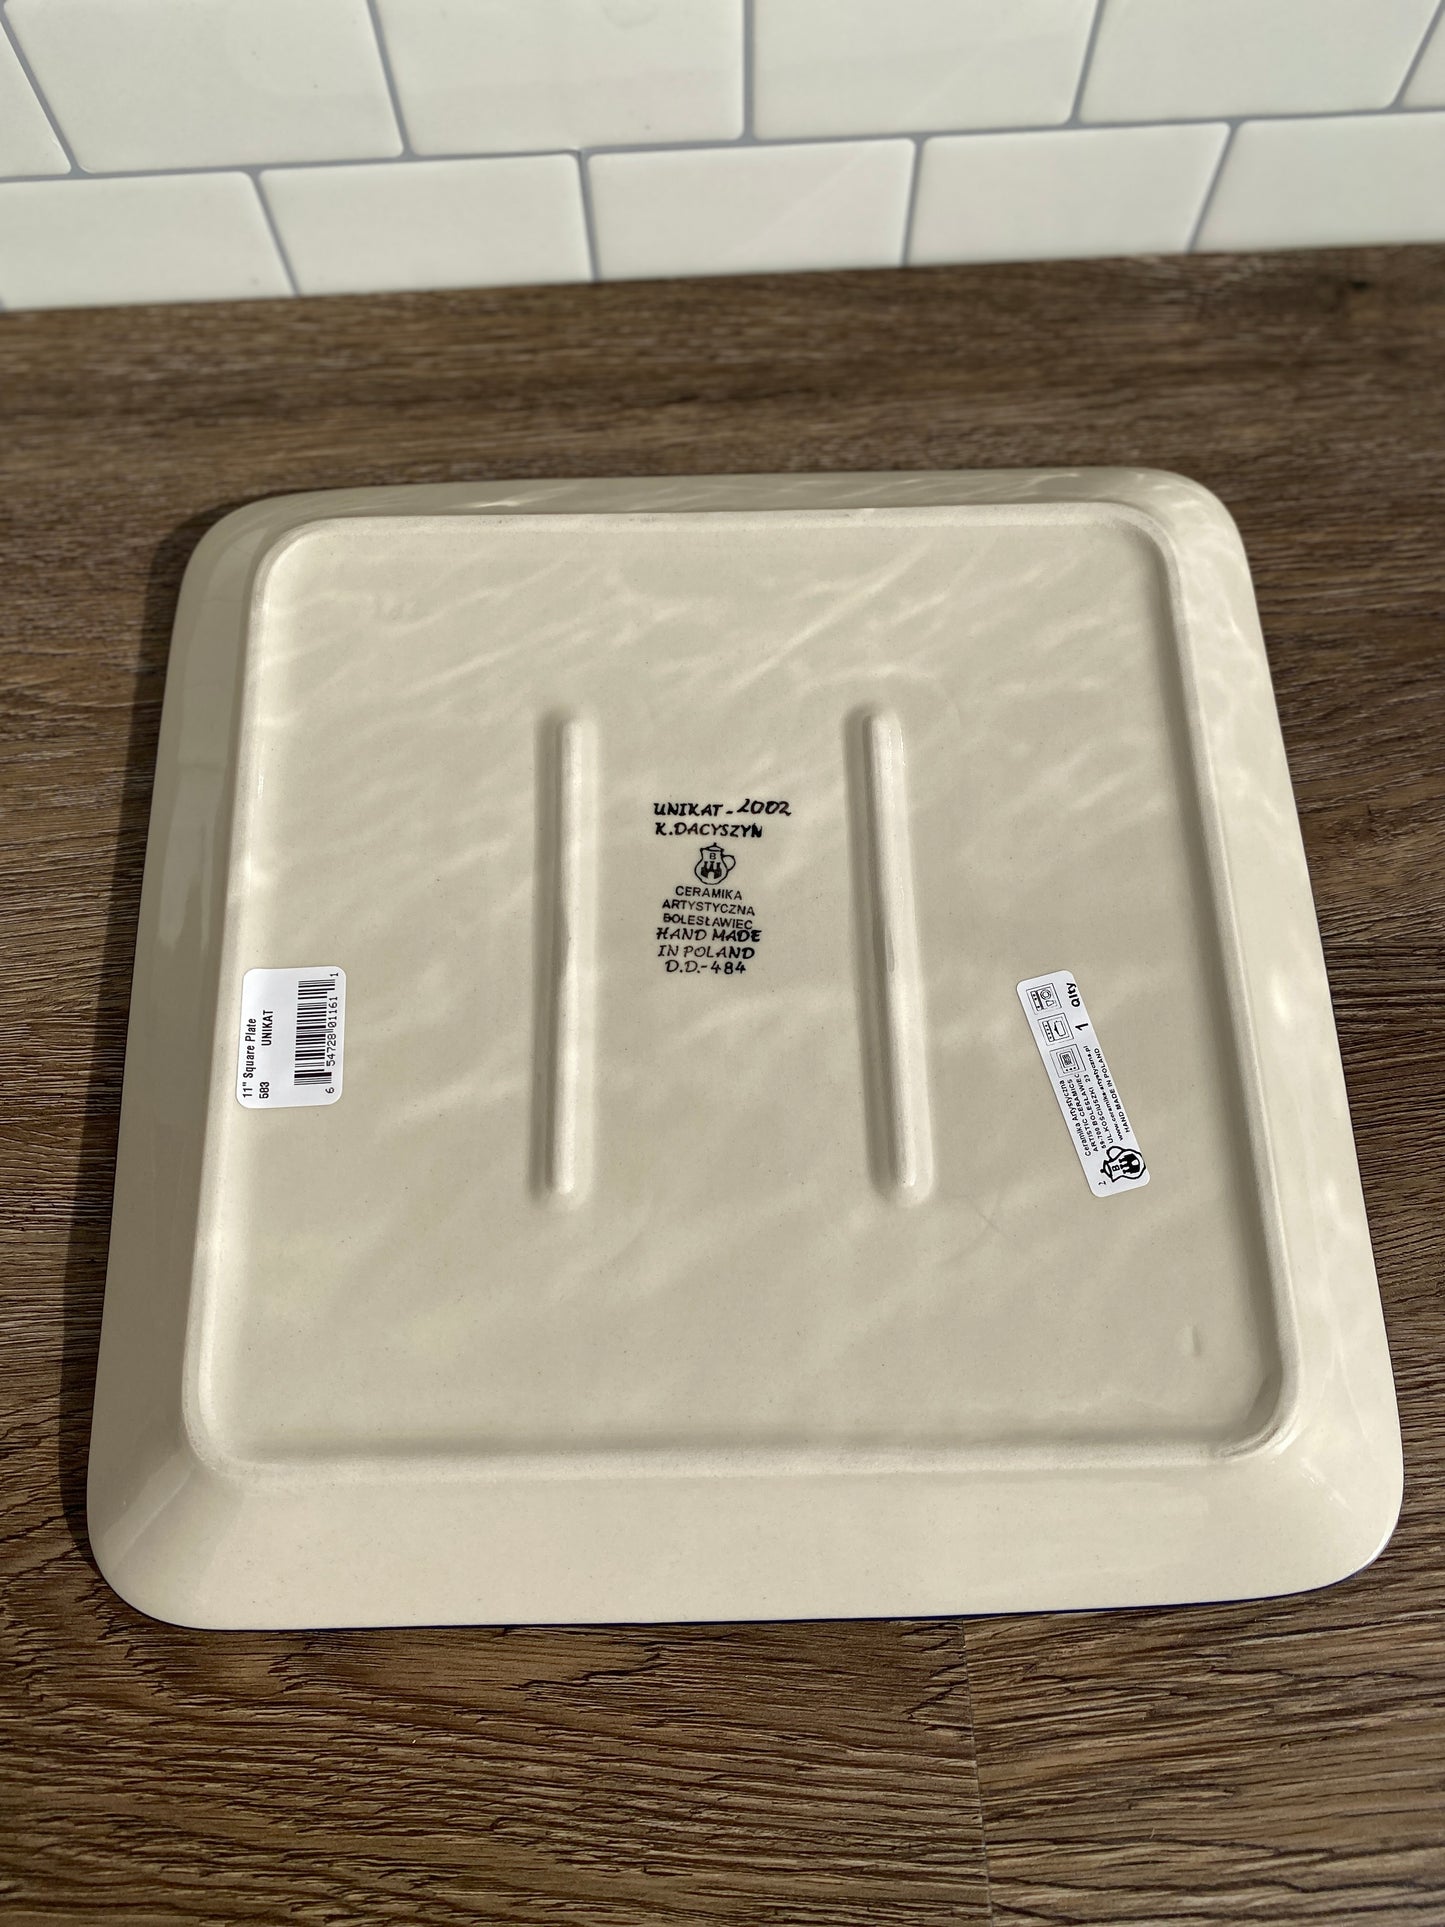 Square Unikat Platter - Shape 583 - Pattern U2002